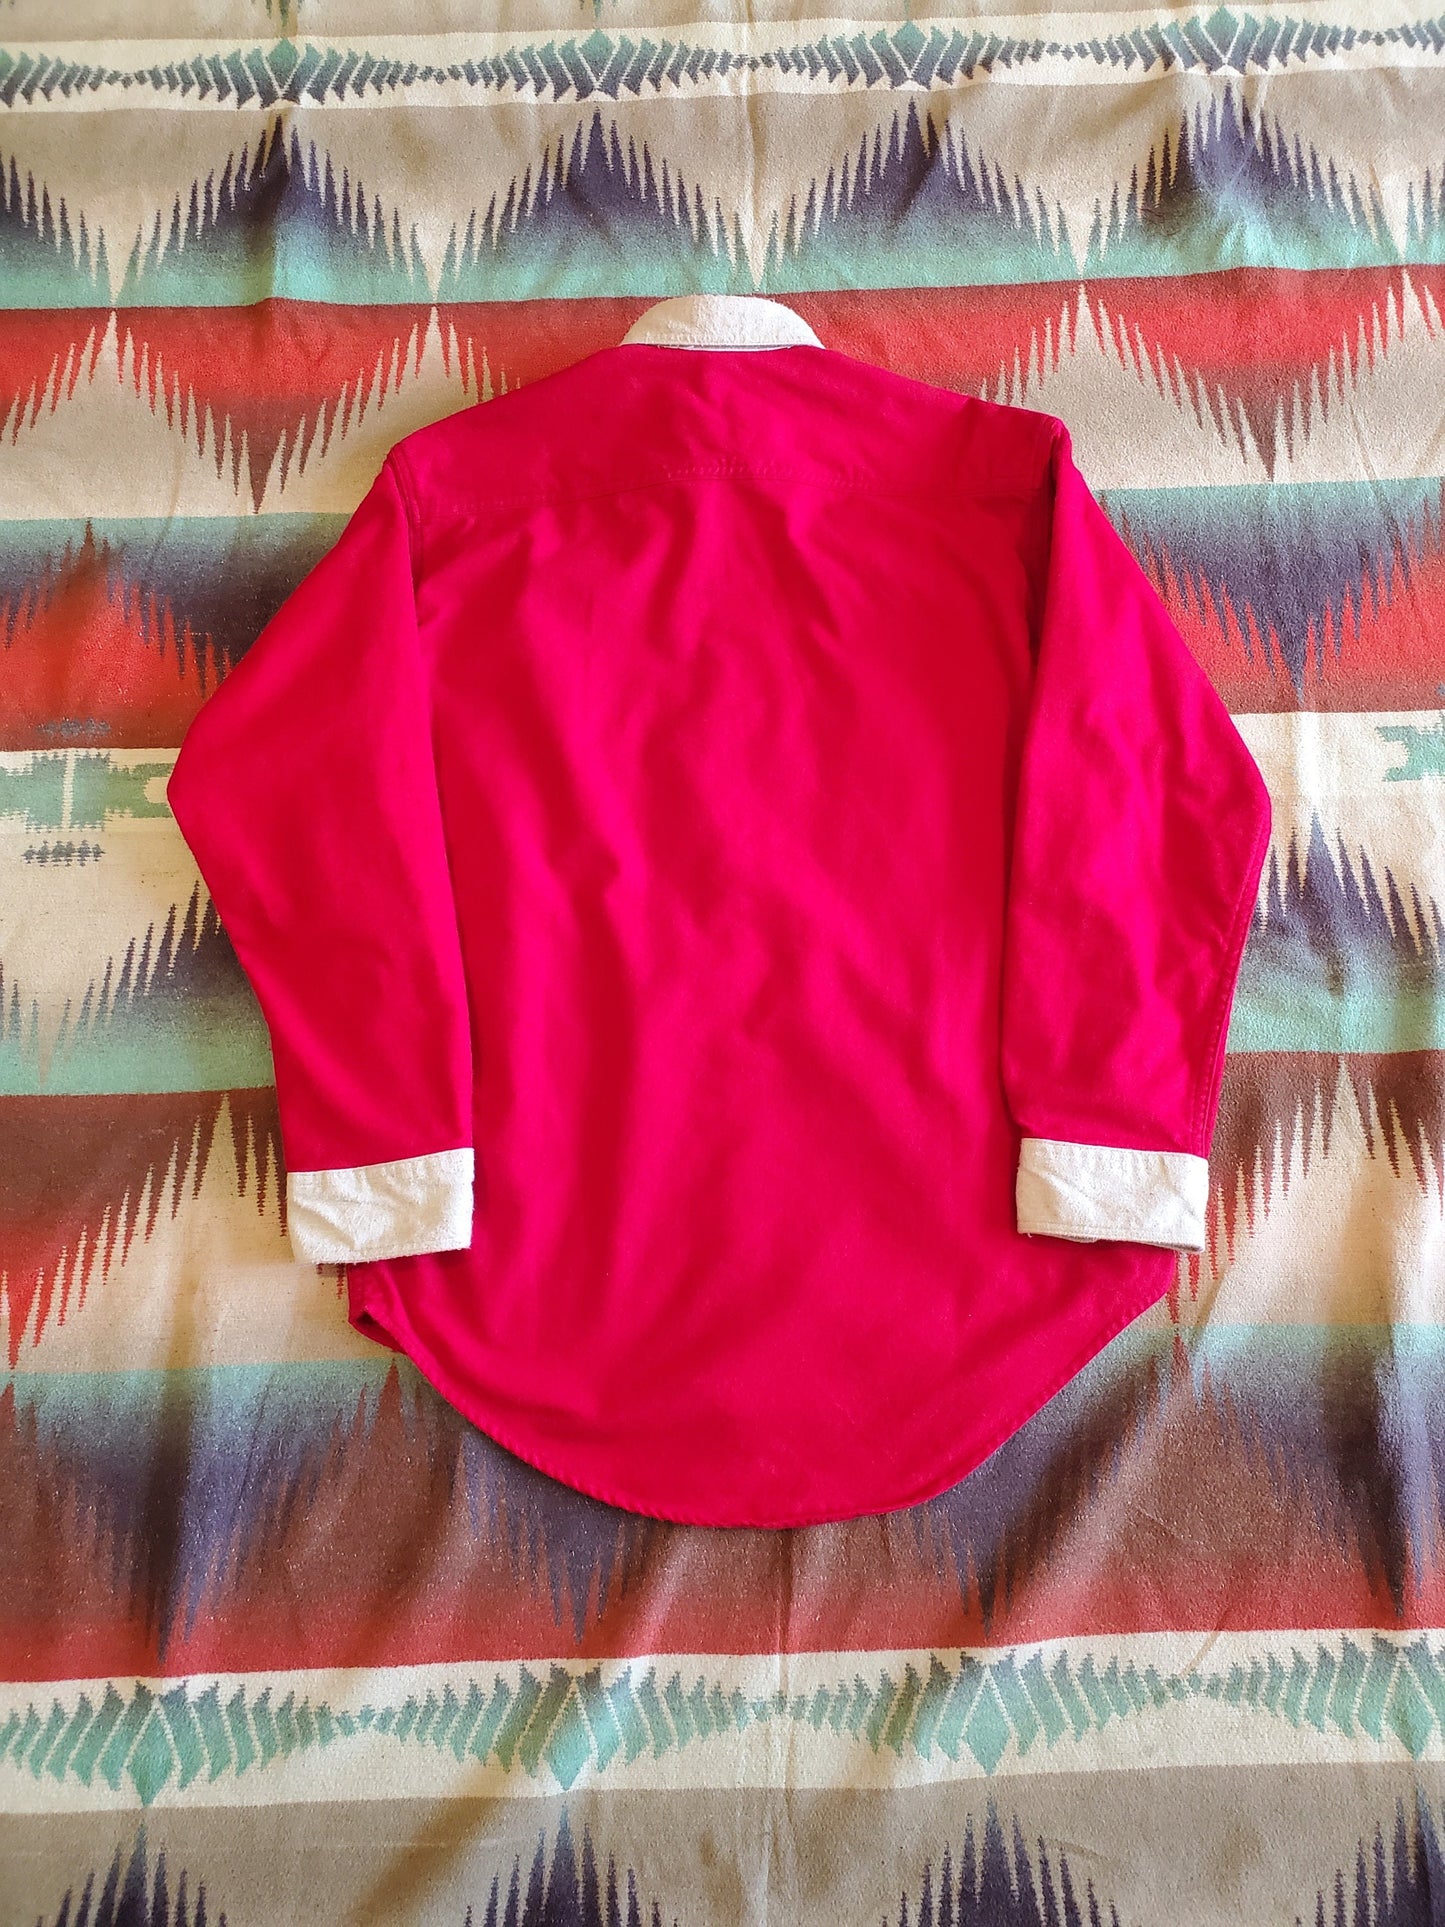 1990s St. John's Bay Two Tone Chamois Shirt Size M/L